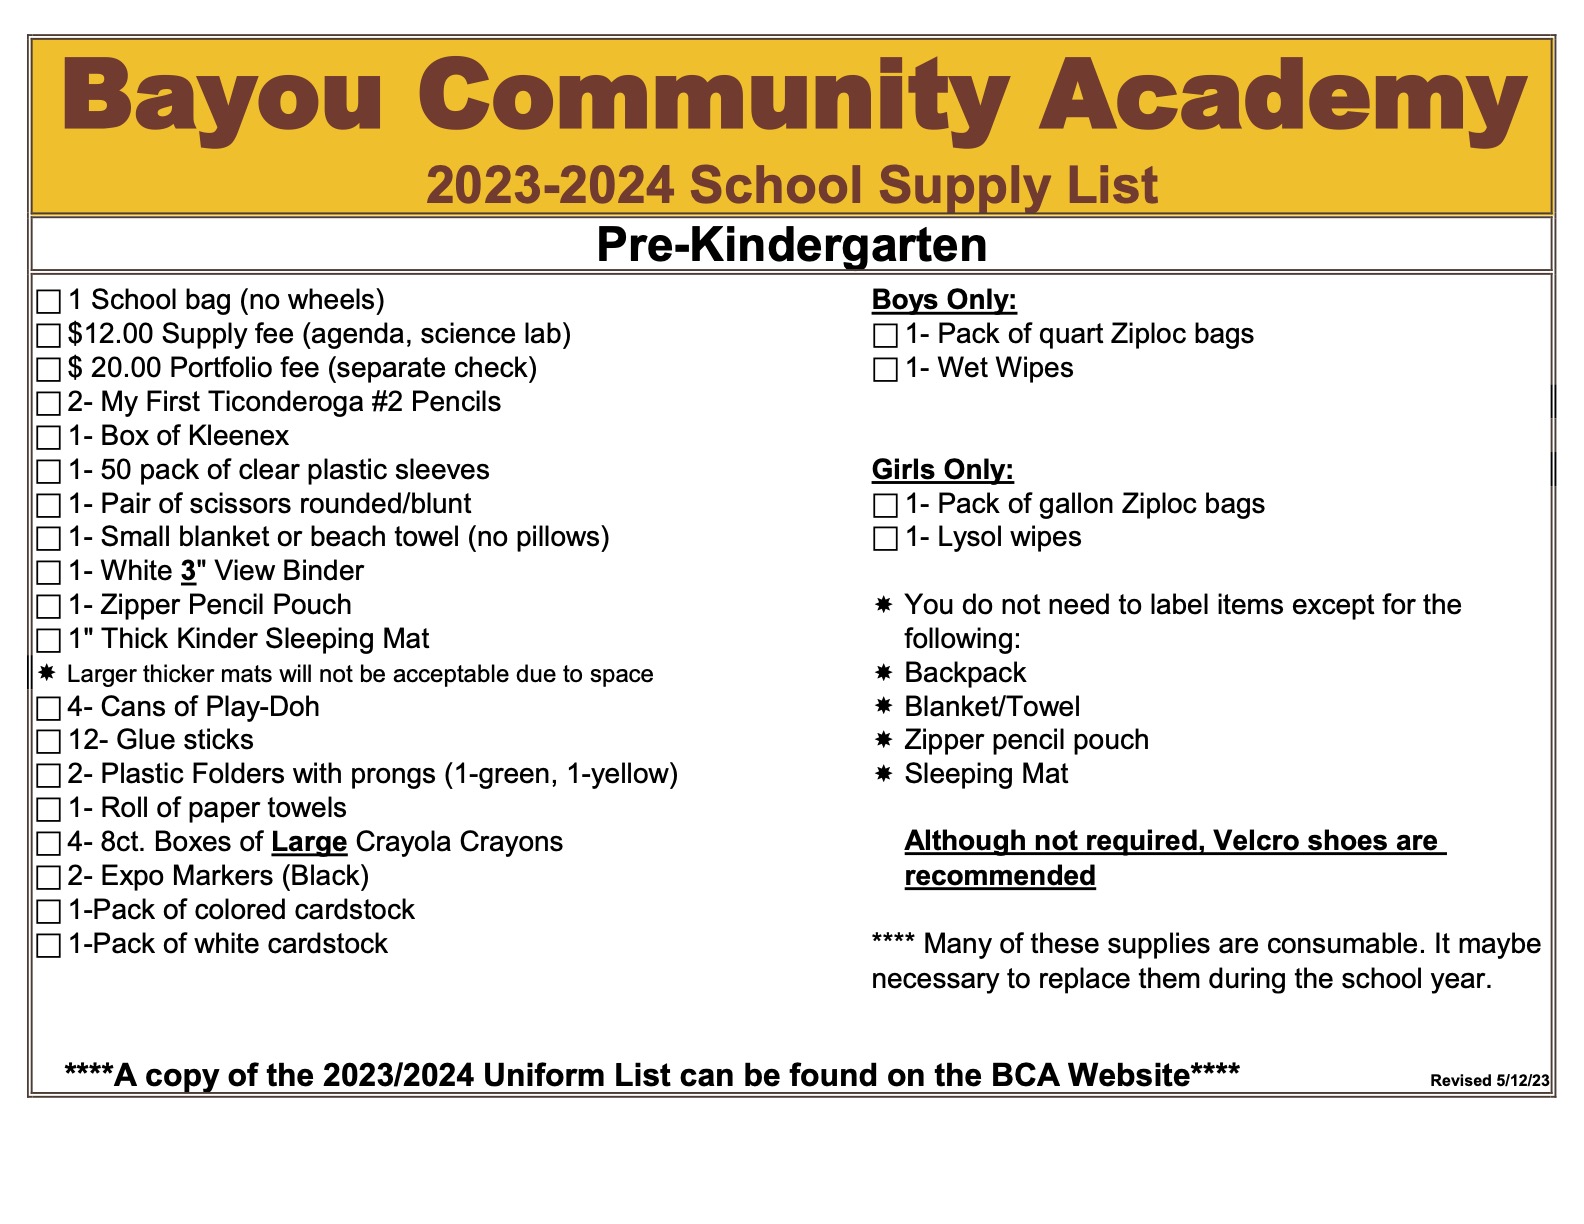 Pre-Kindergarten Supply List